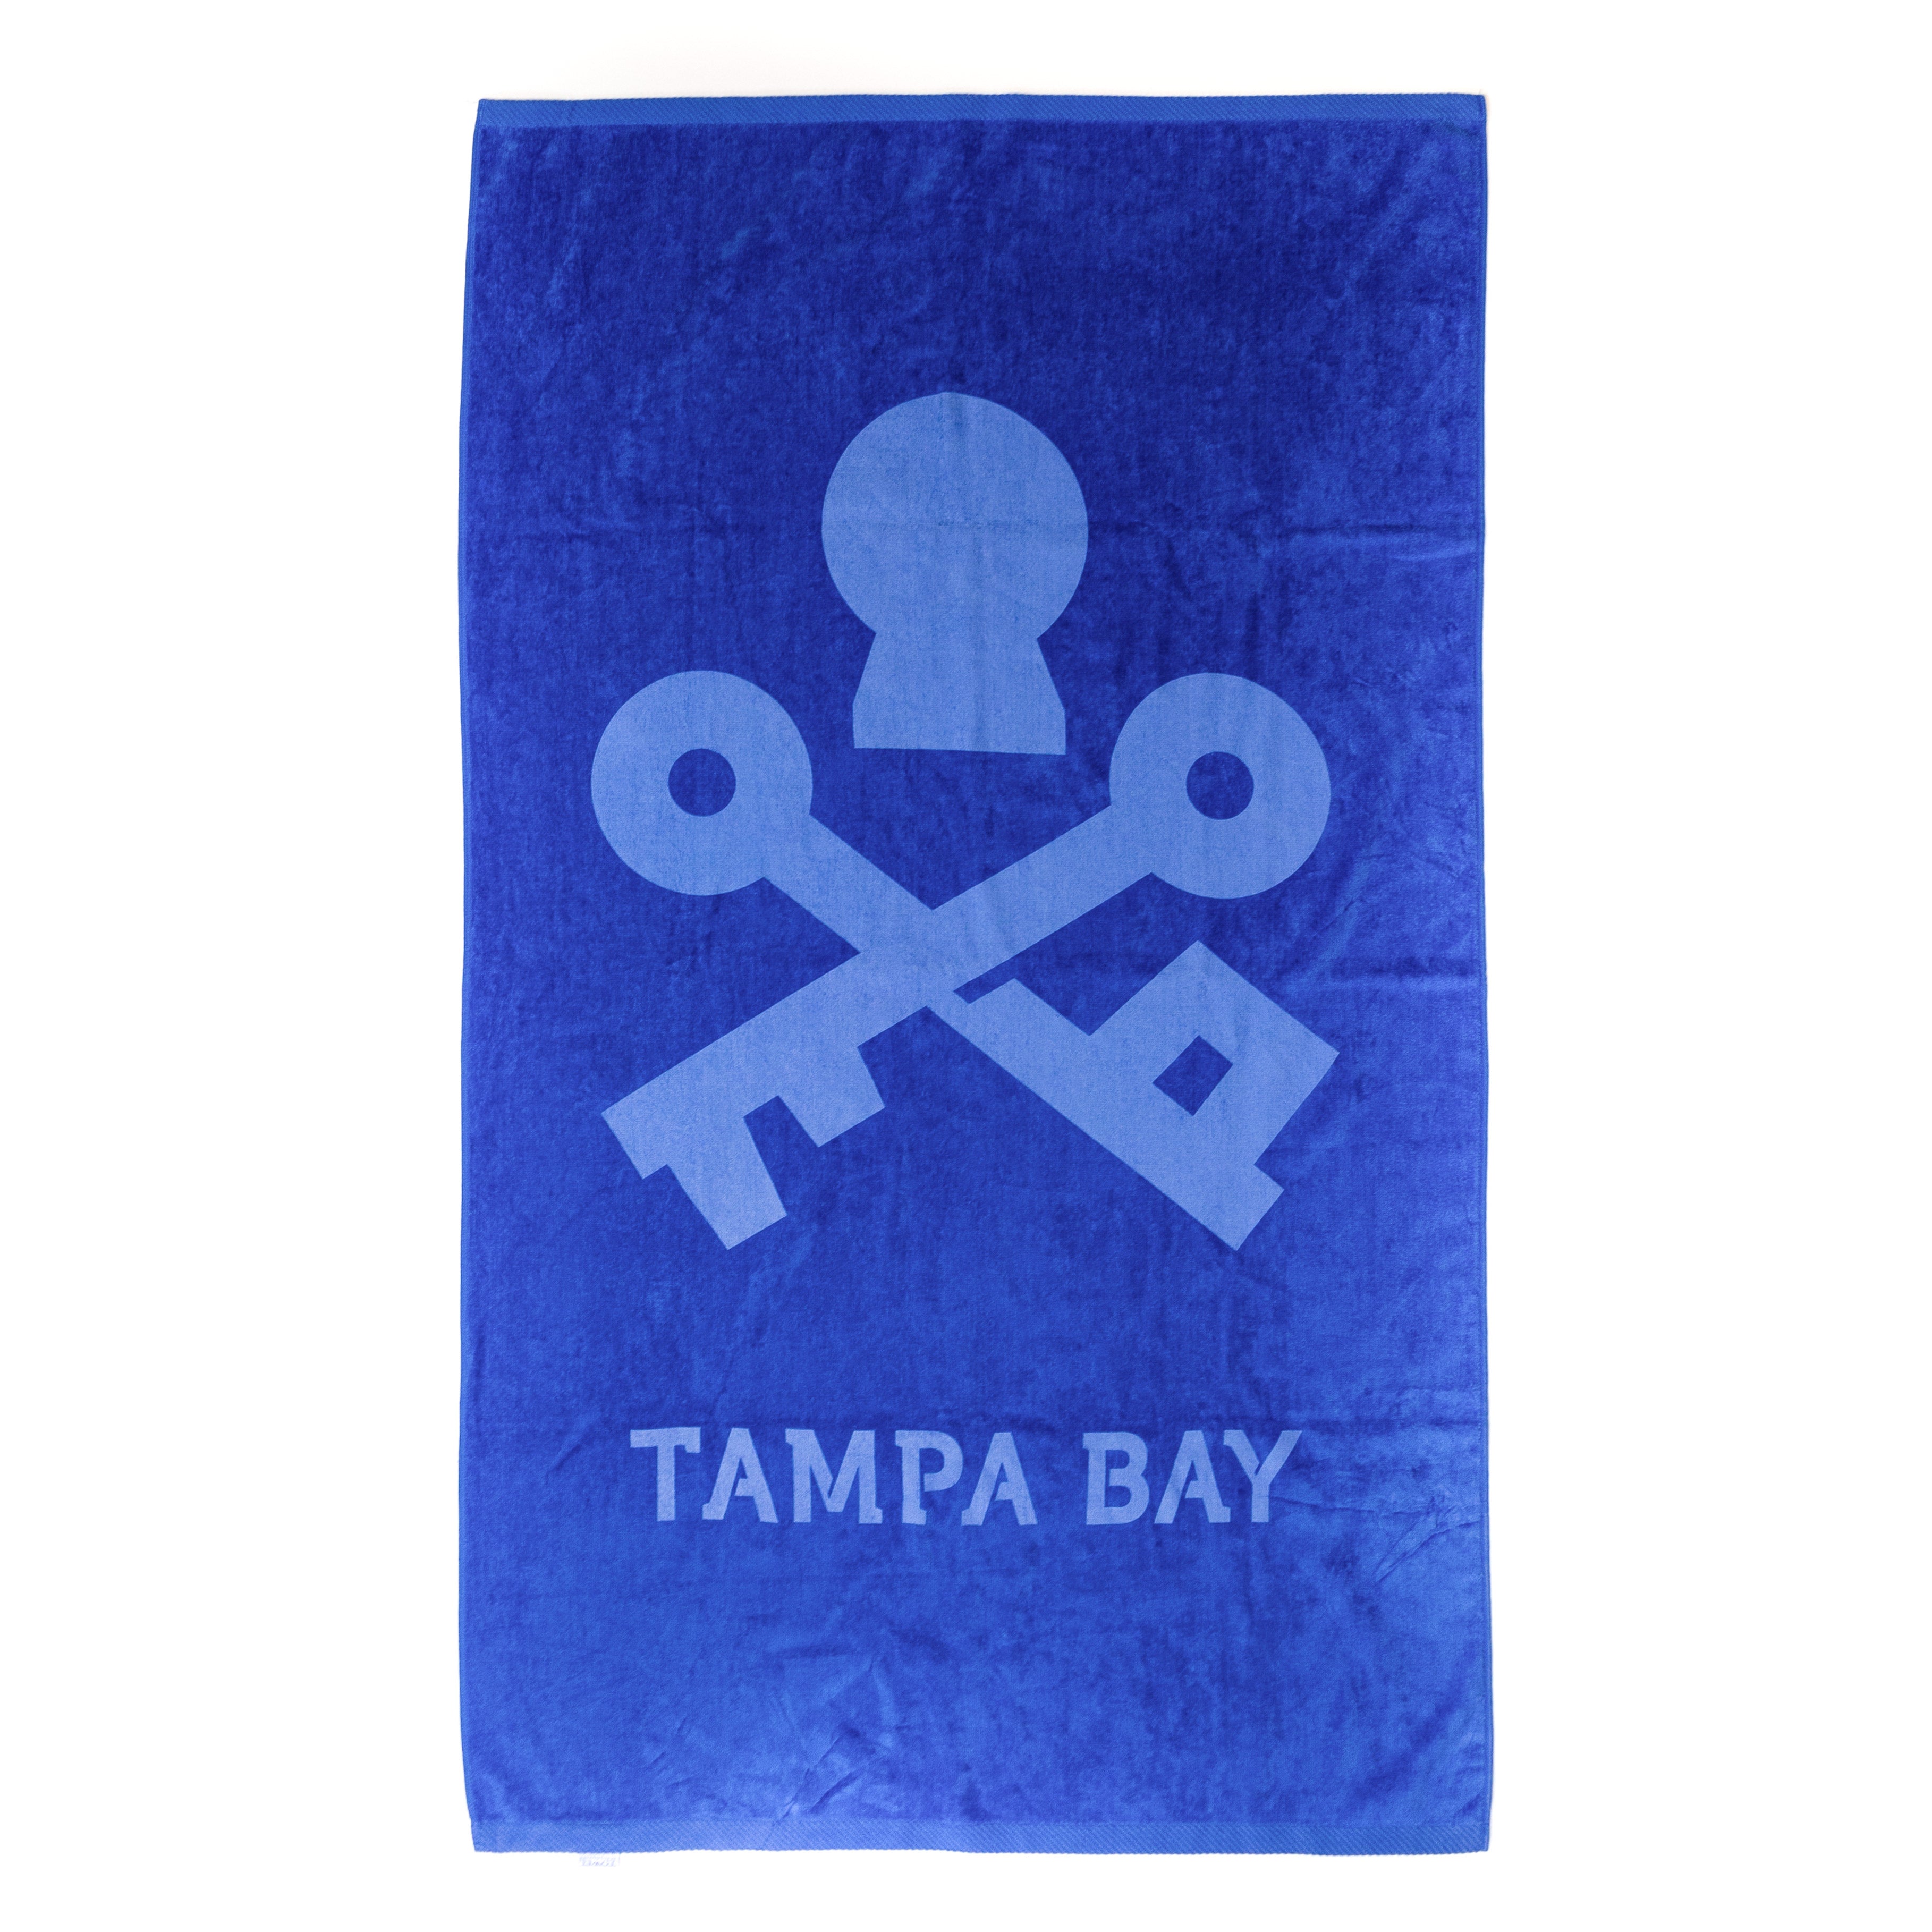 Tampa Bay Pool Towel